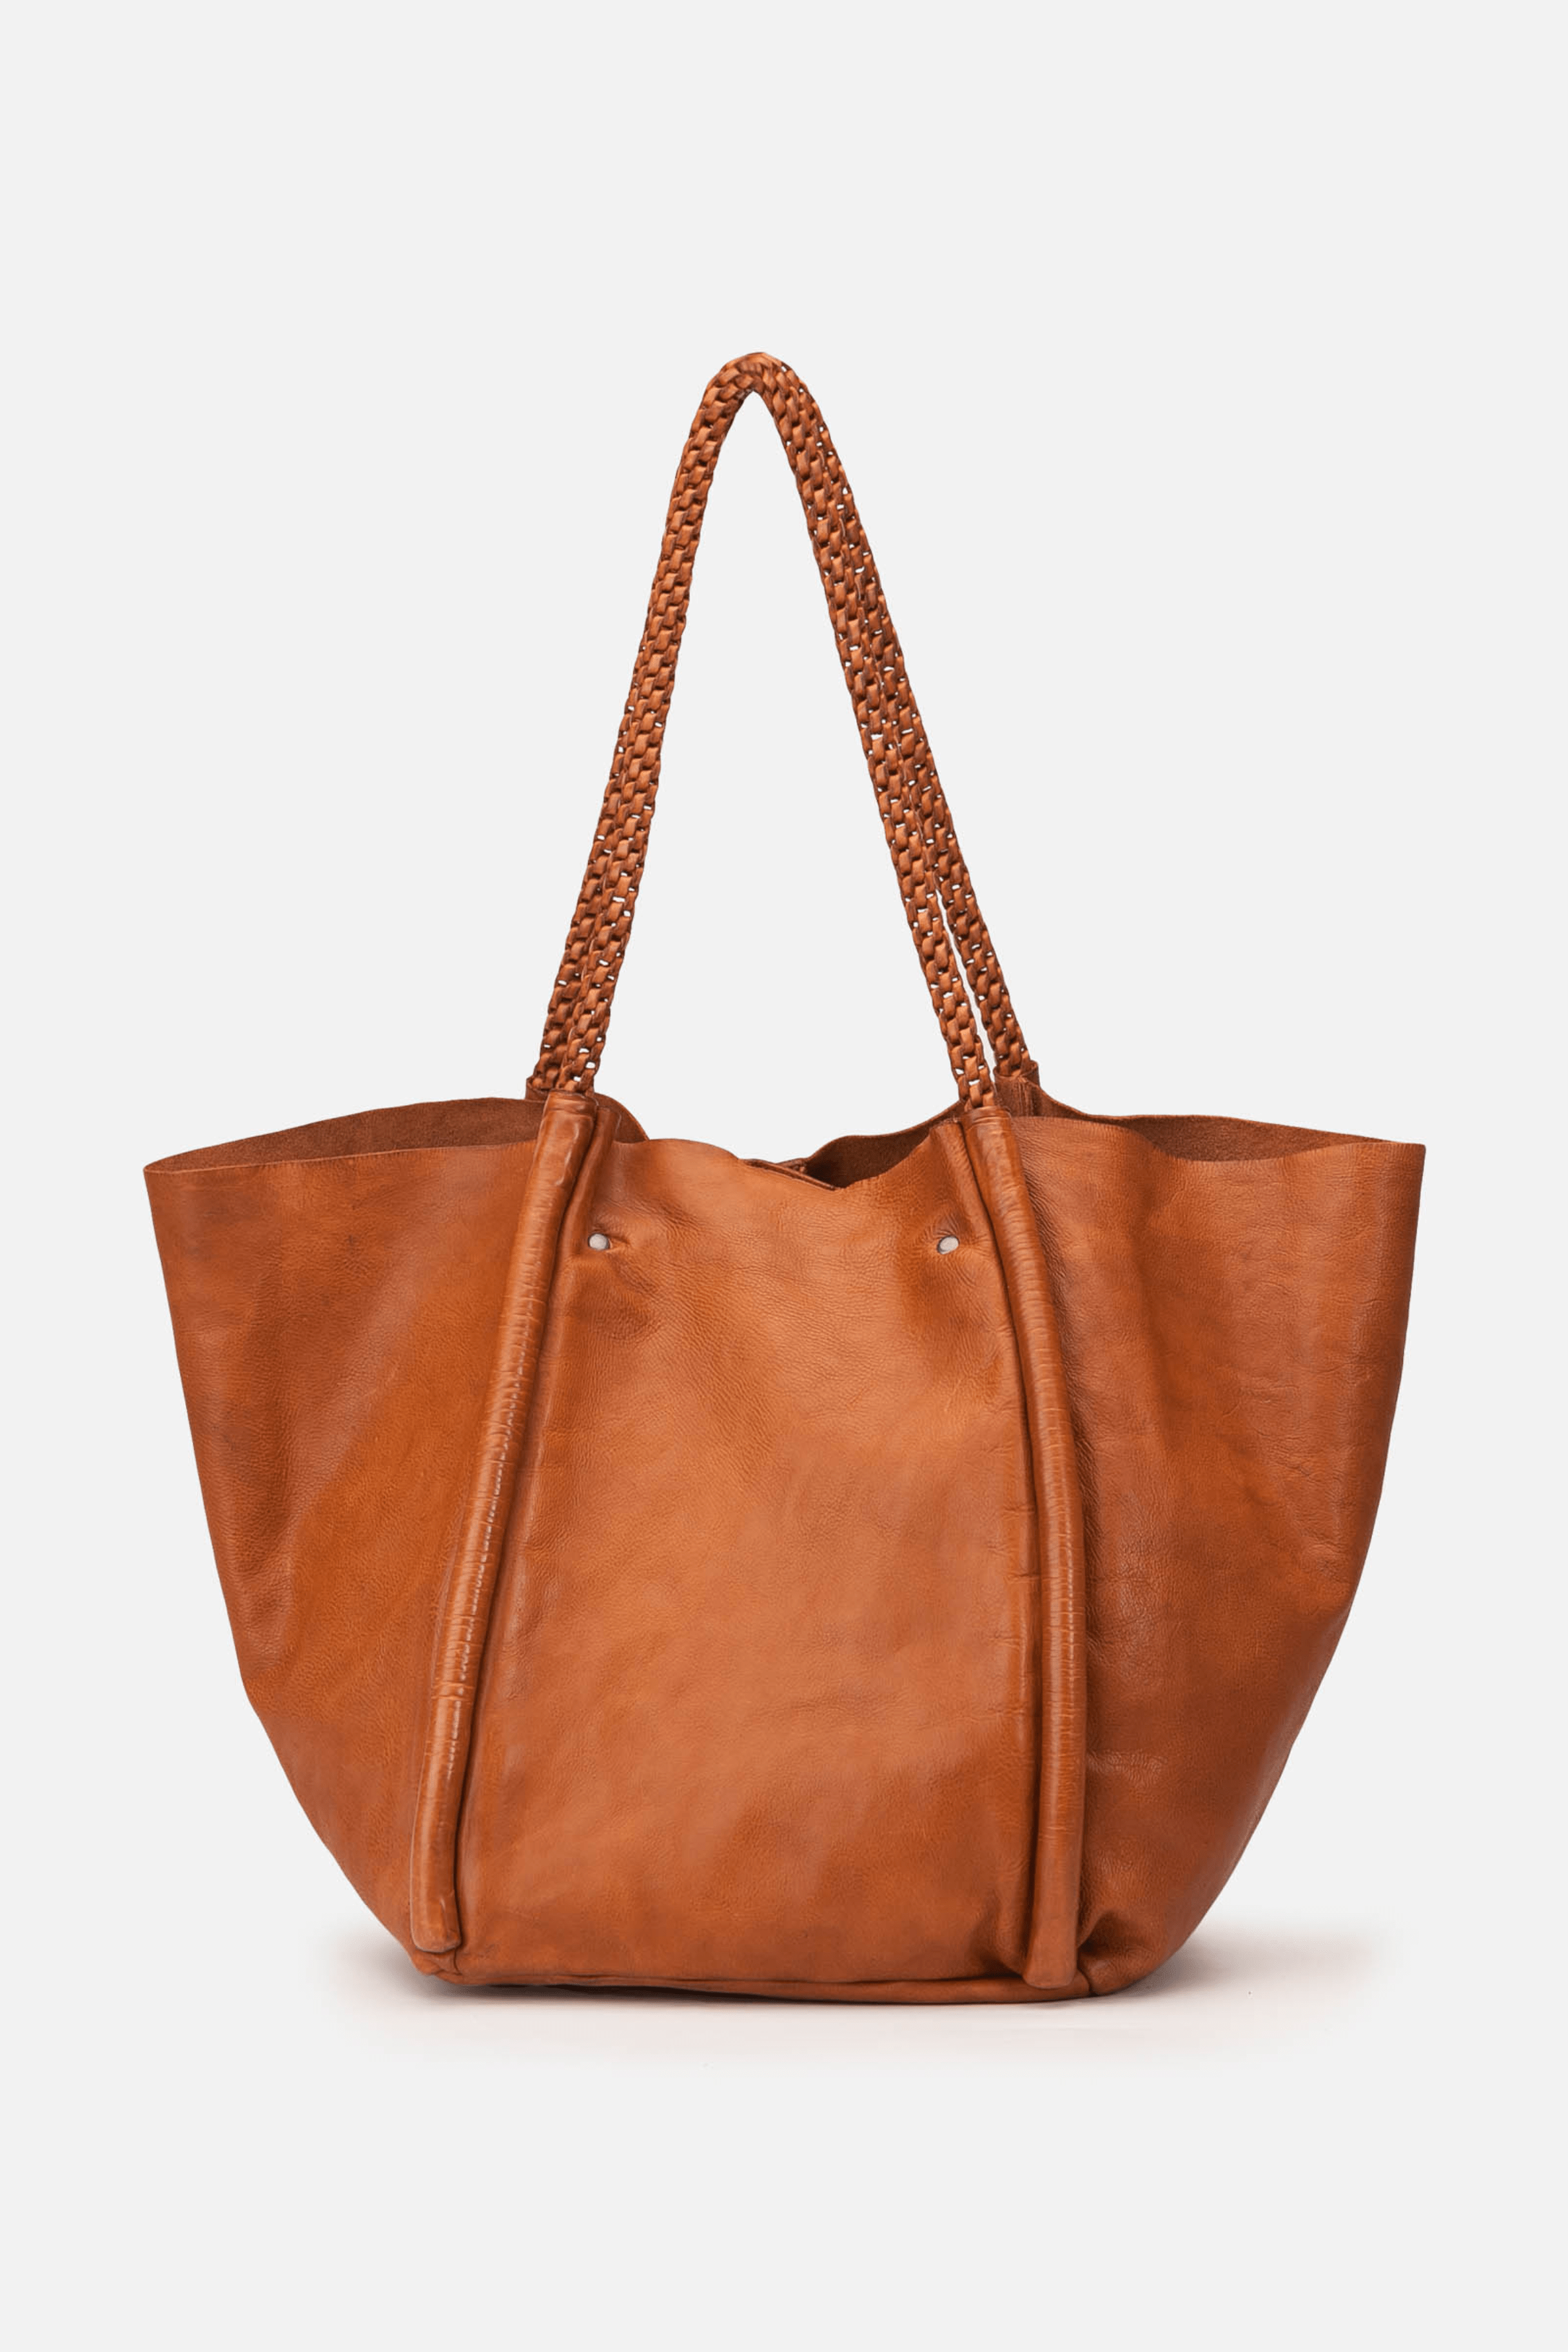  Grand sac cabas marron avec anses tressé en cuir 